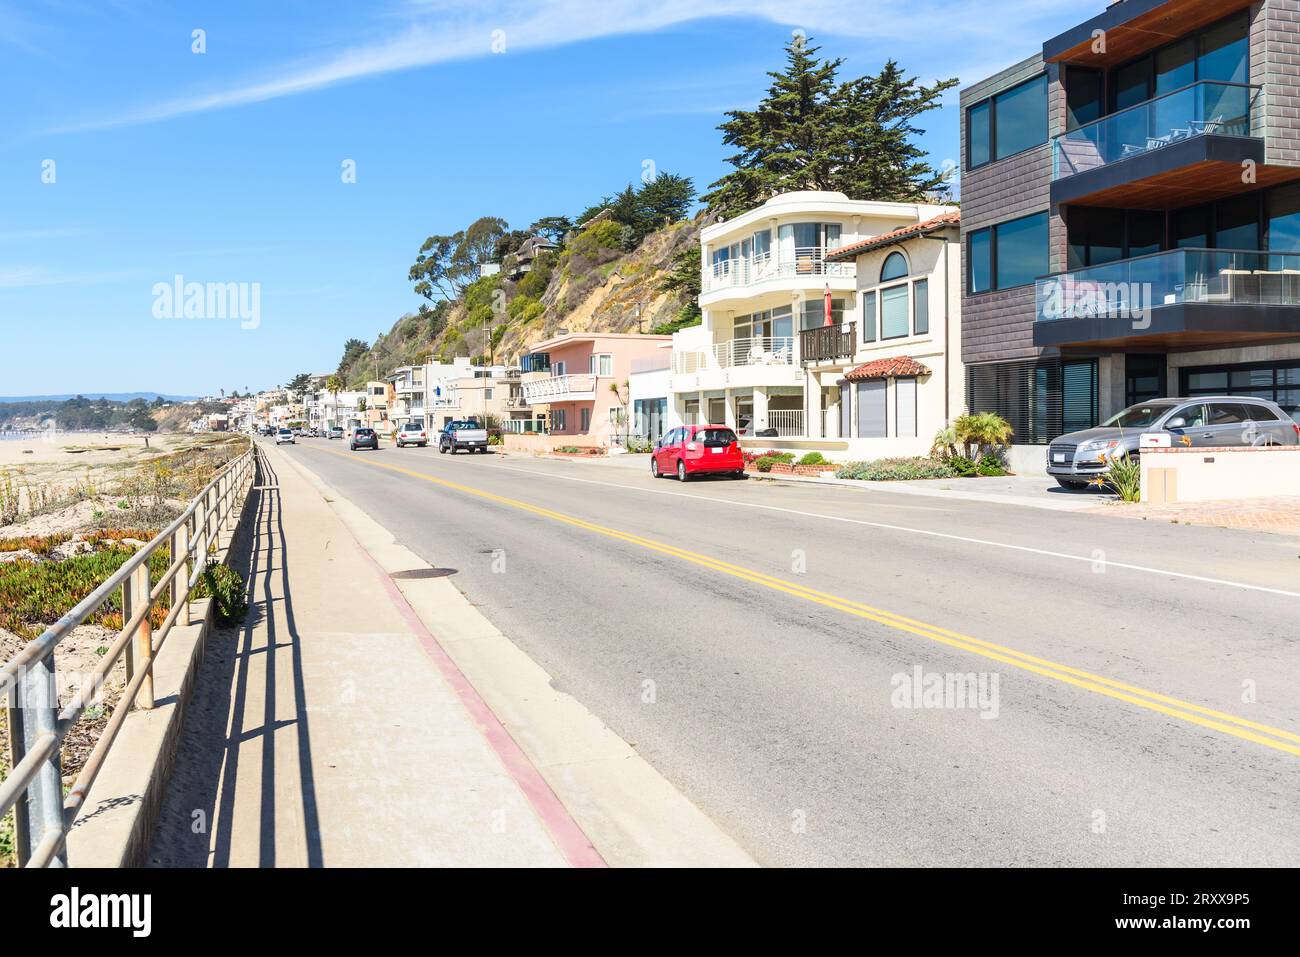 Strada costeggiata da case e appartamenti lungo una spiaggia sabbiosa in una chiara giornata autunnale Foto Stock